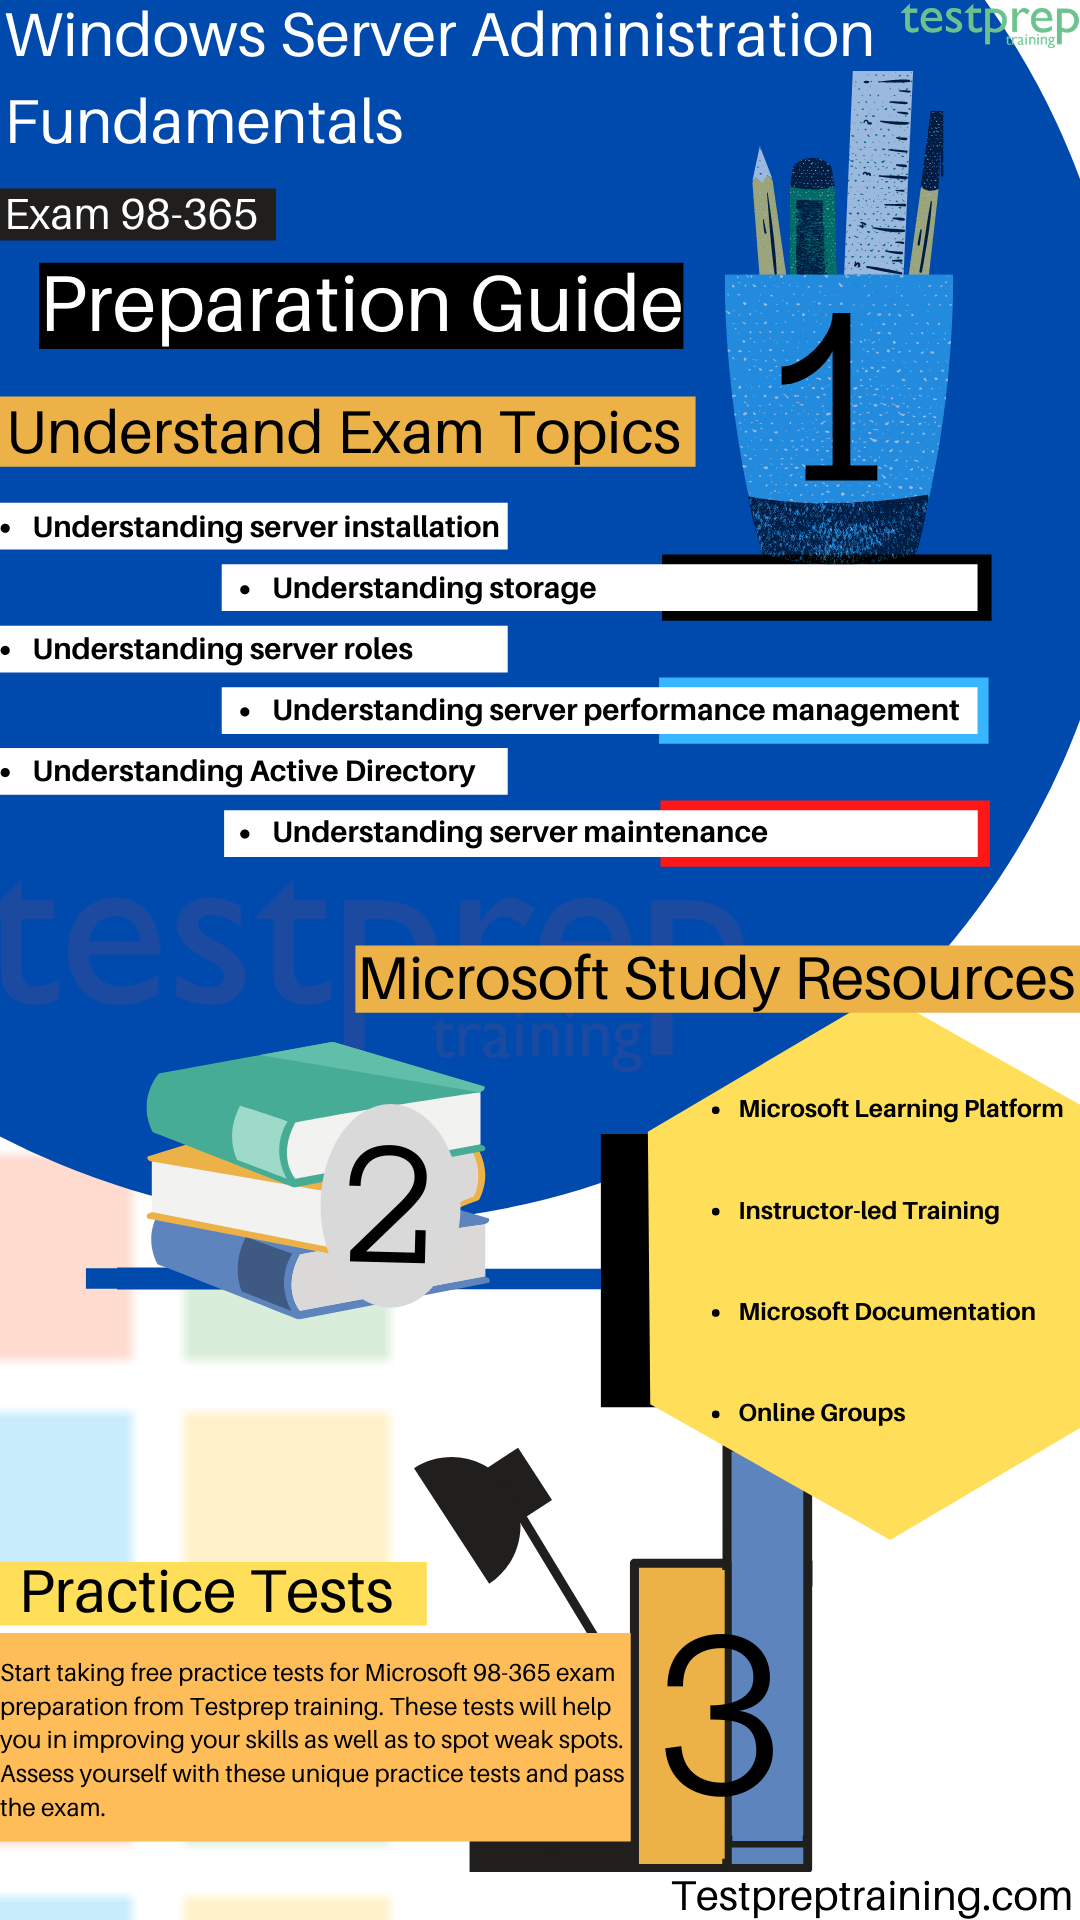 Windows Server Administration Fundamentals 98-365 Exam study guide